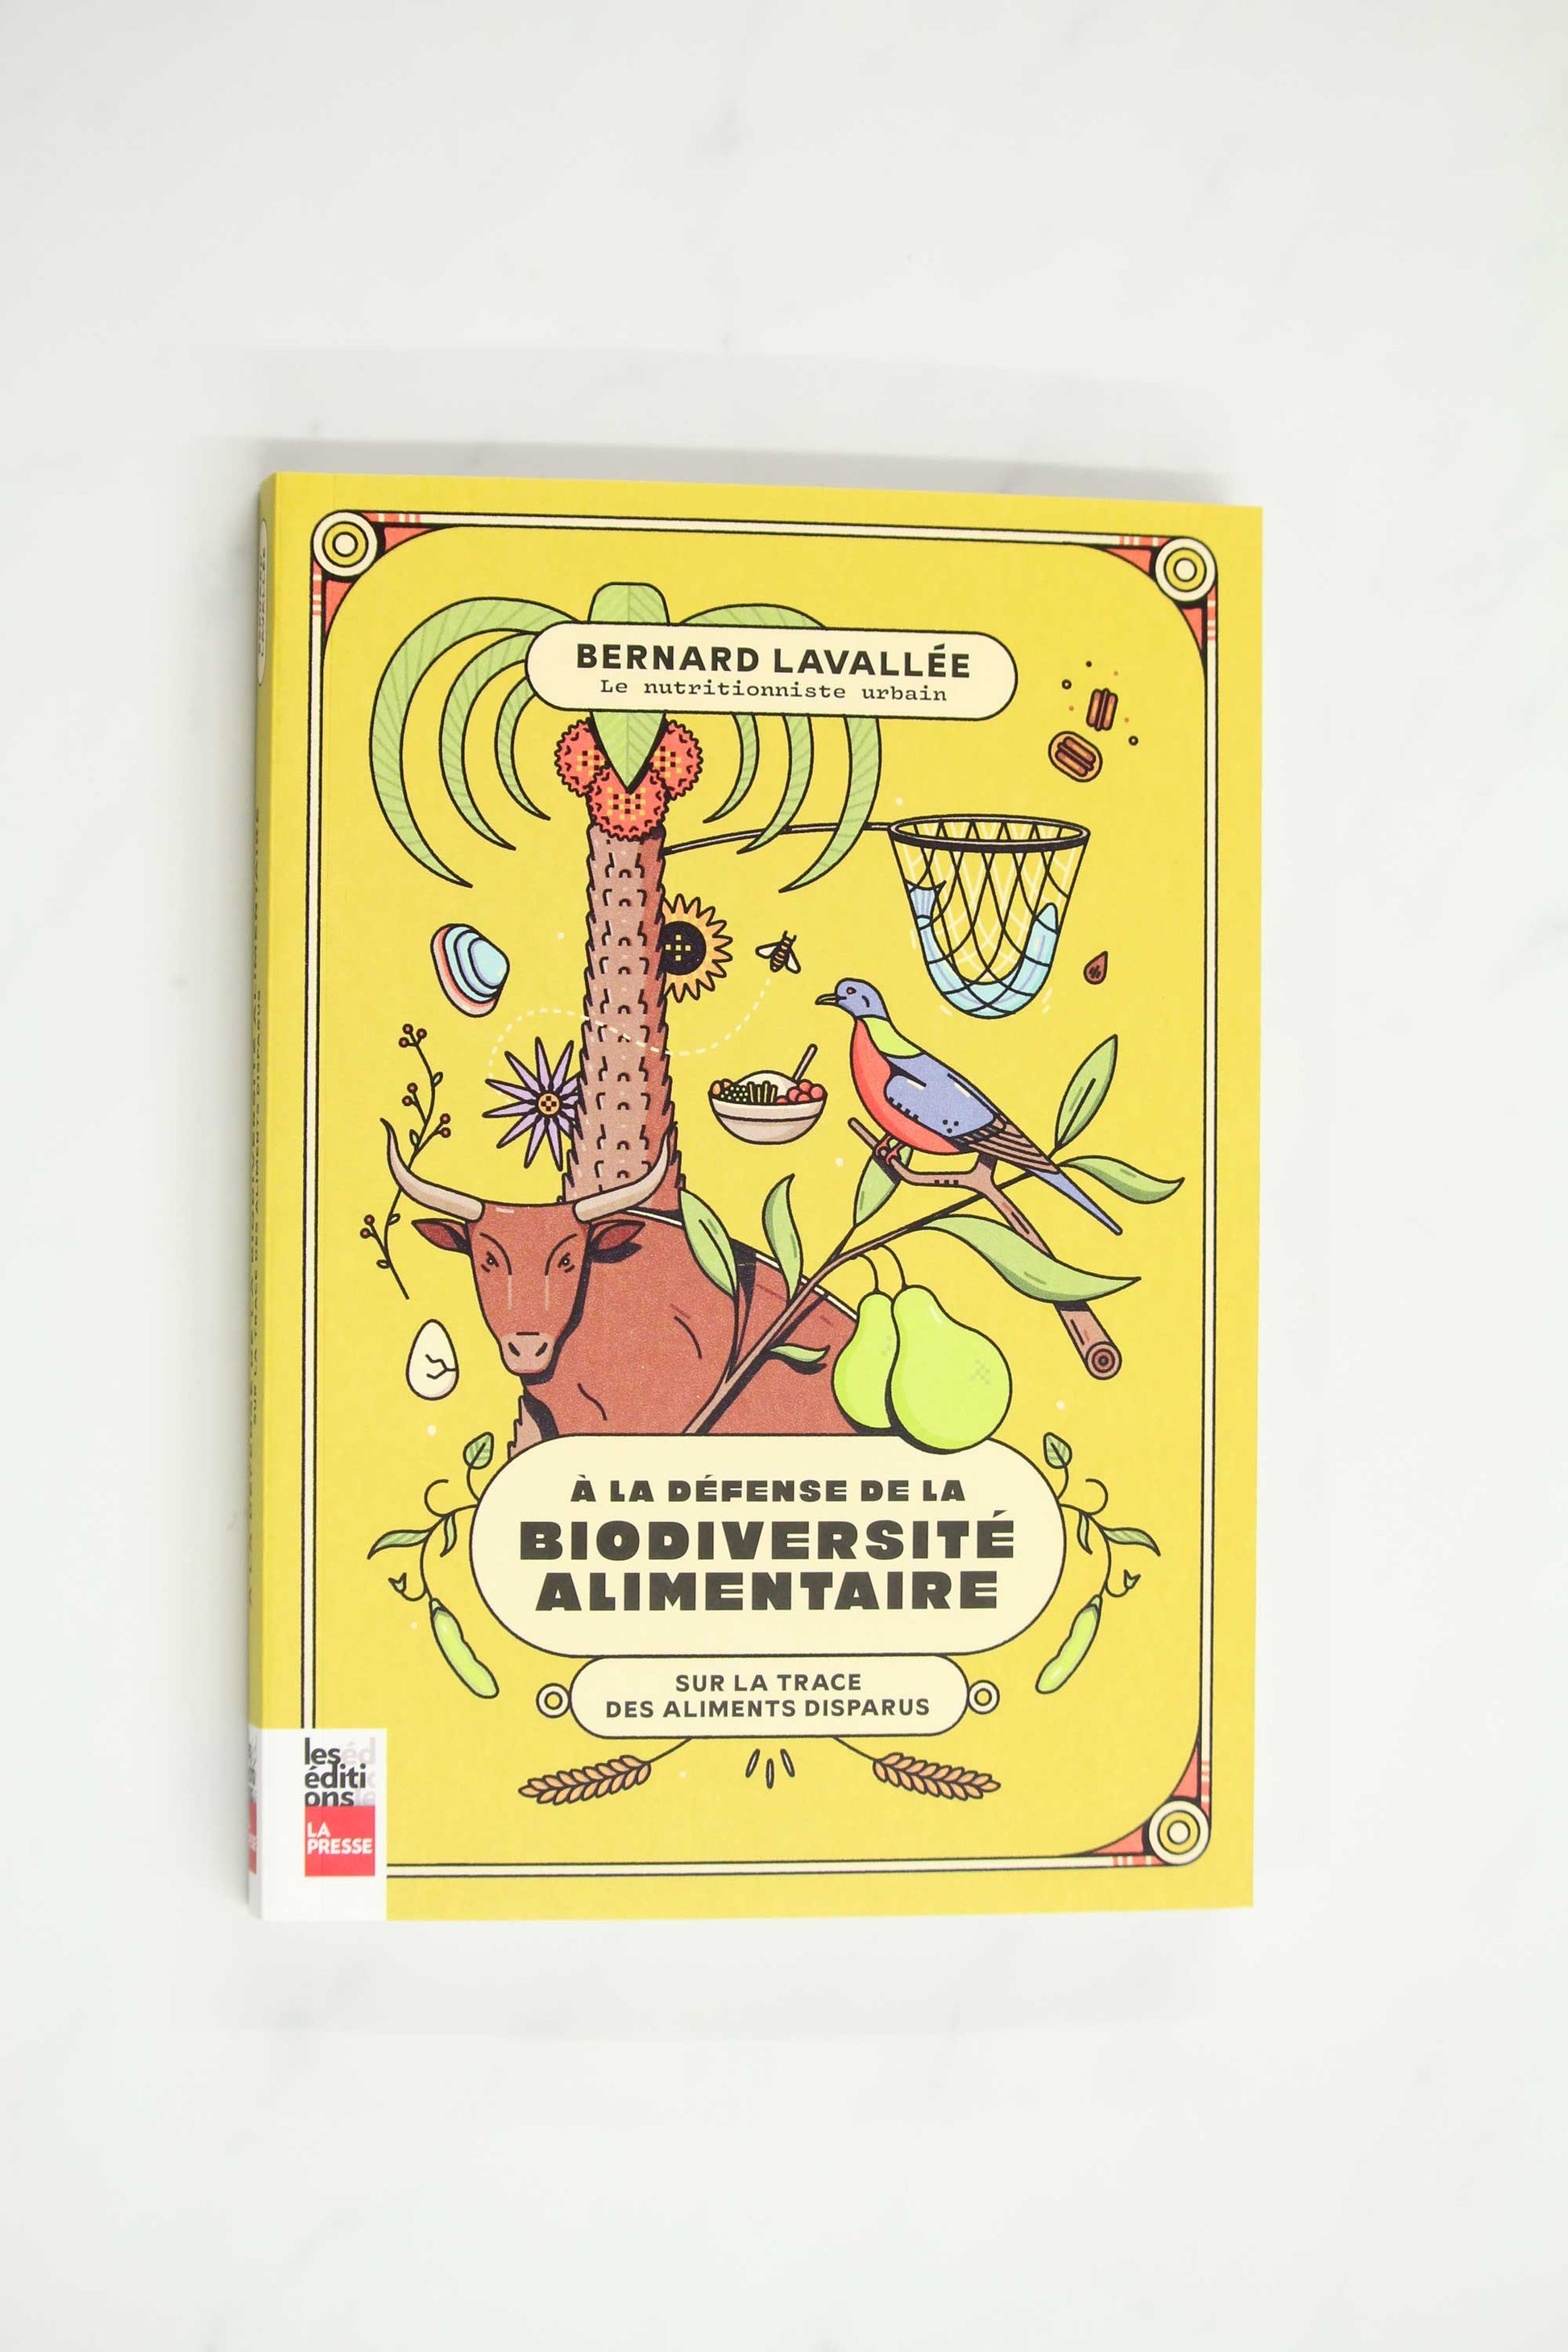 À la recherche de la biodiversité alimentaire yellow book cover with illustration of various fauna, food, and flora on cover 